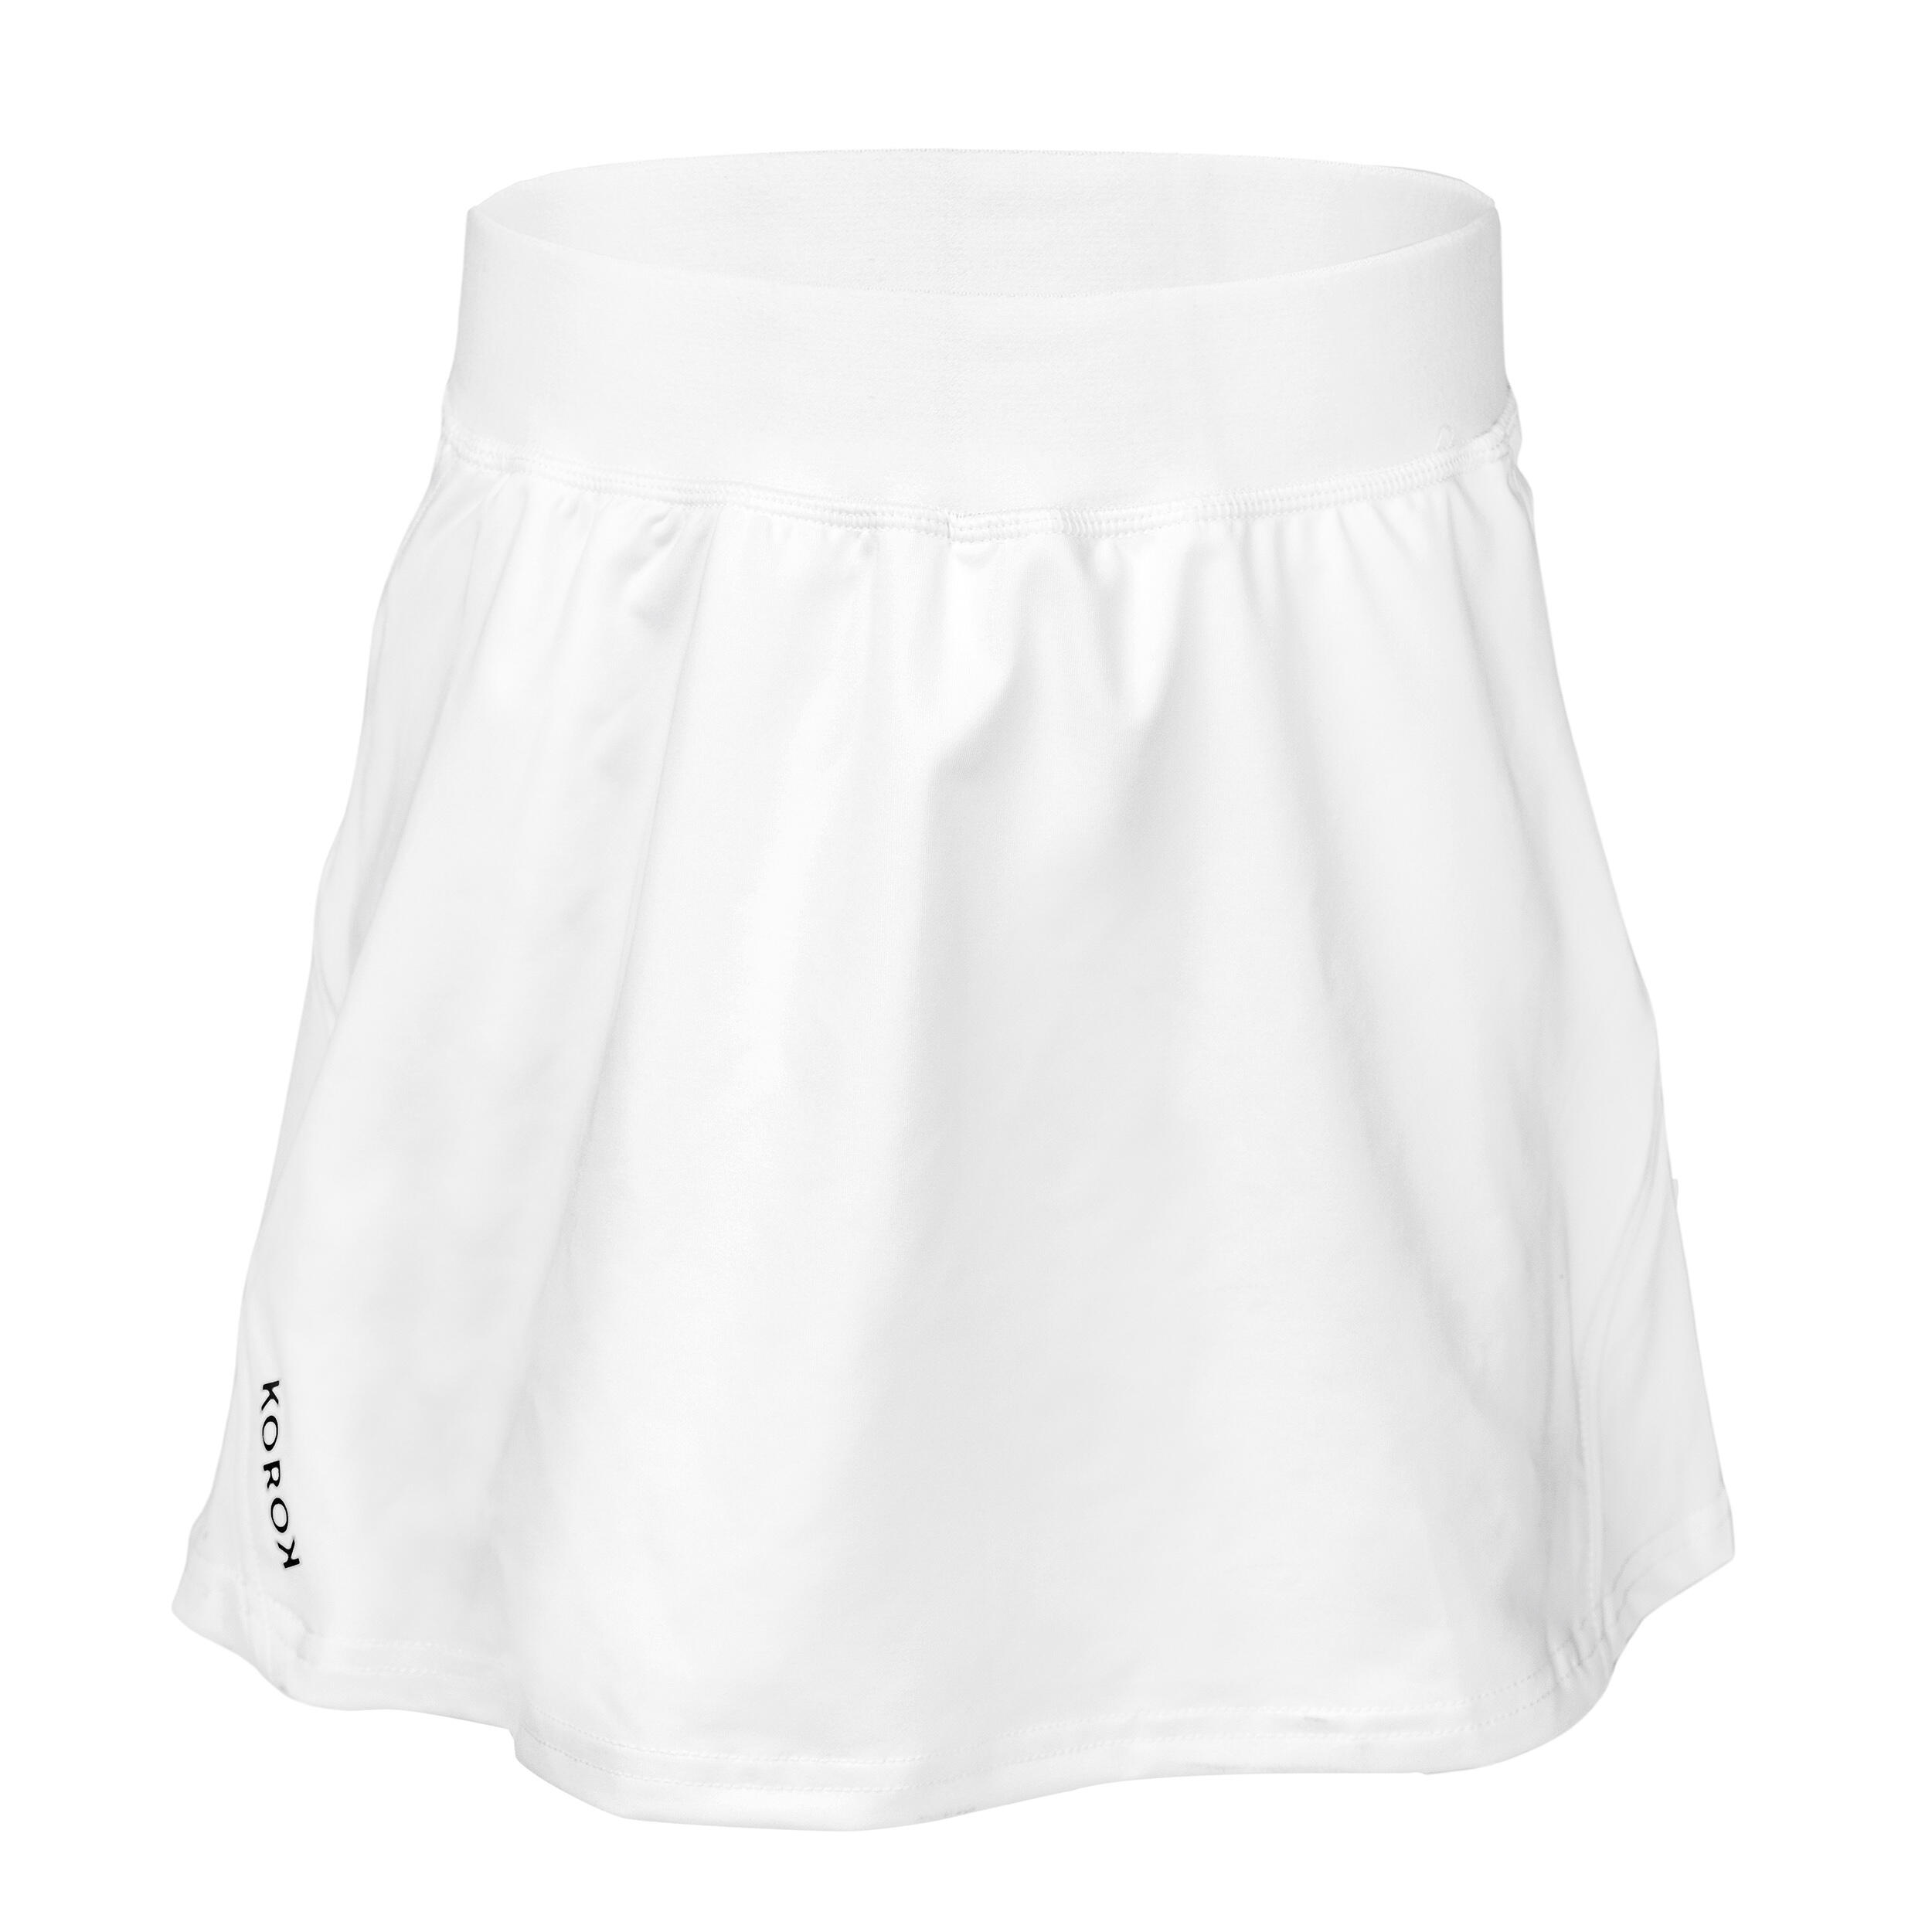 KOROK Women's High-Intensity Field Hockey Skirt FH900 - White